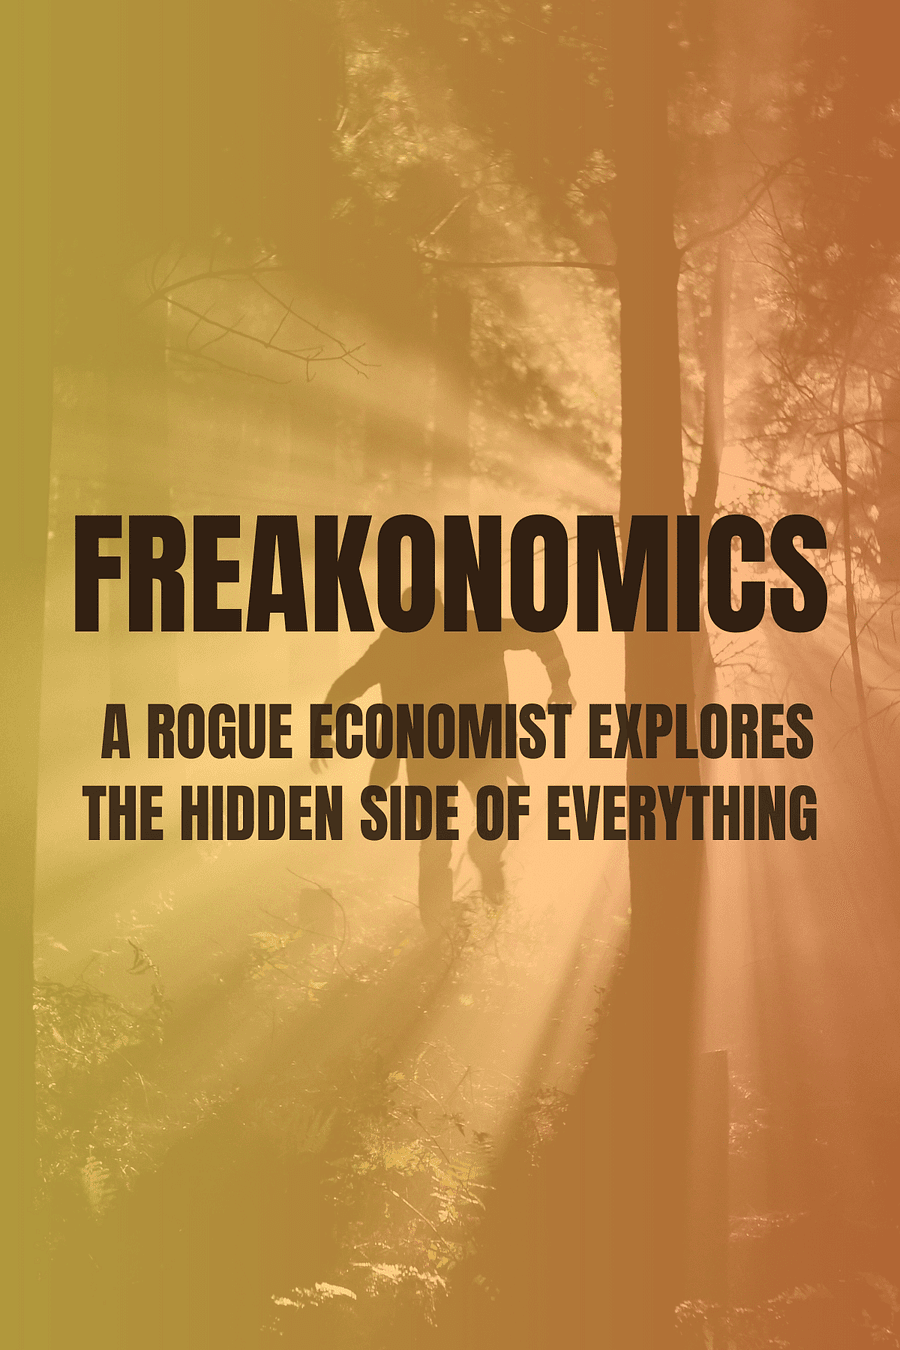 Freakonomics Rev Ed by Steven D. Levitt, Stephen J. Dubner - Book Summary